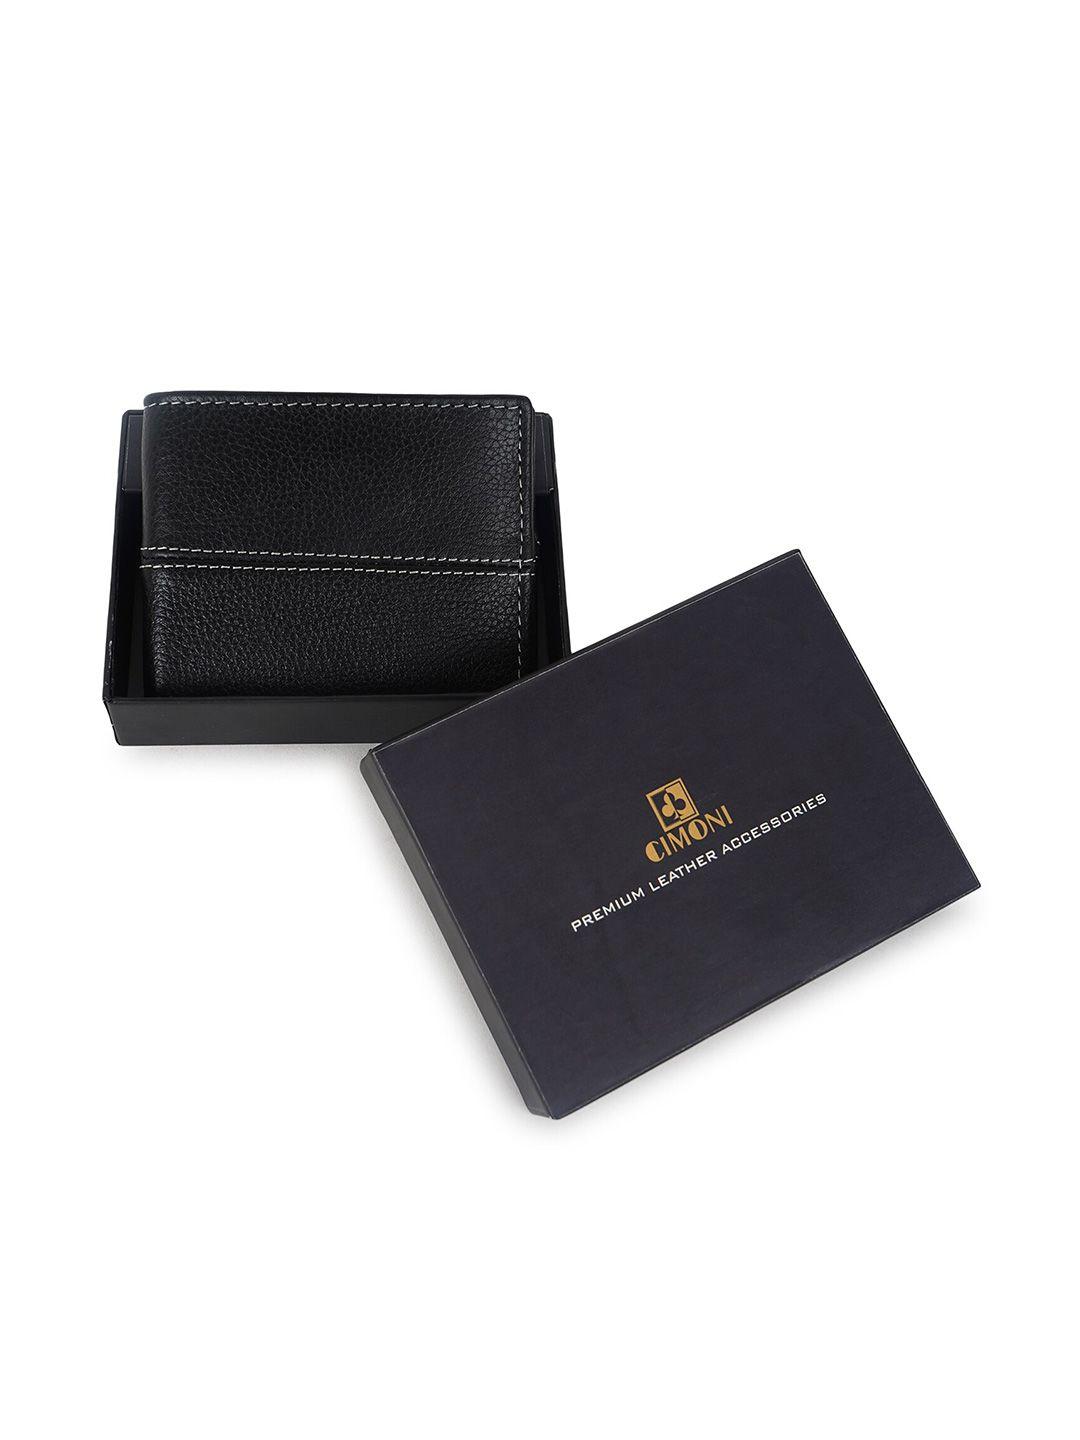 cimoni unisex black leather two fold wallet